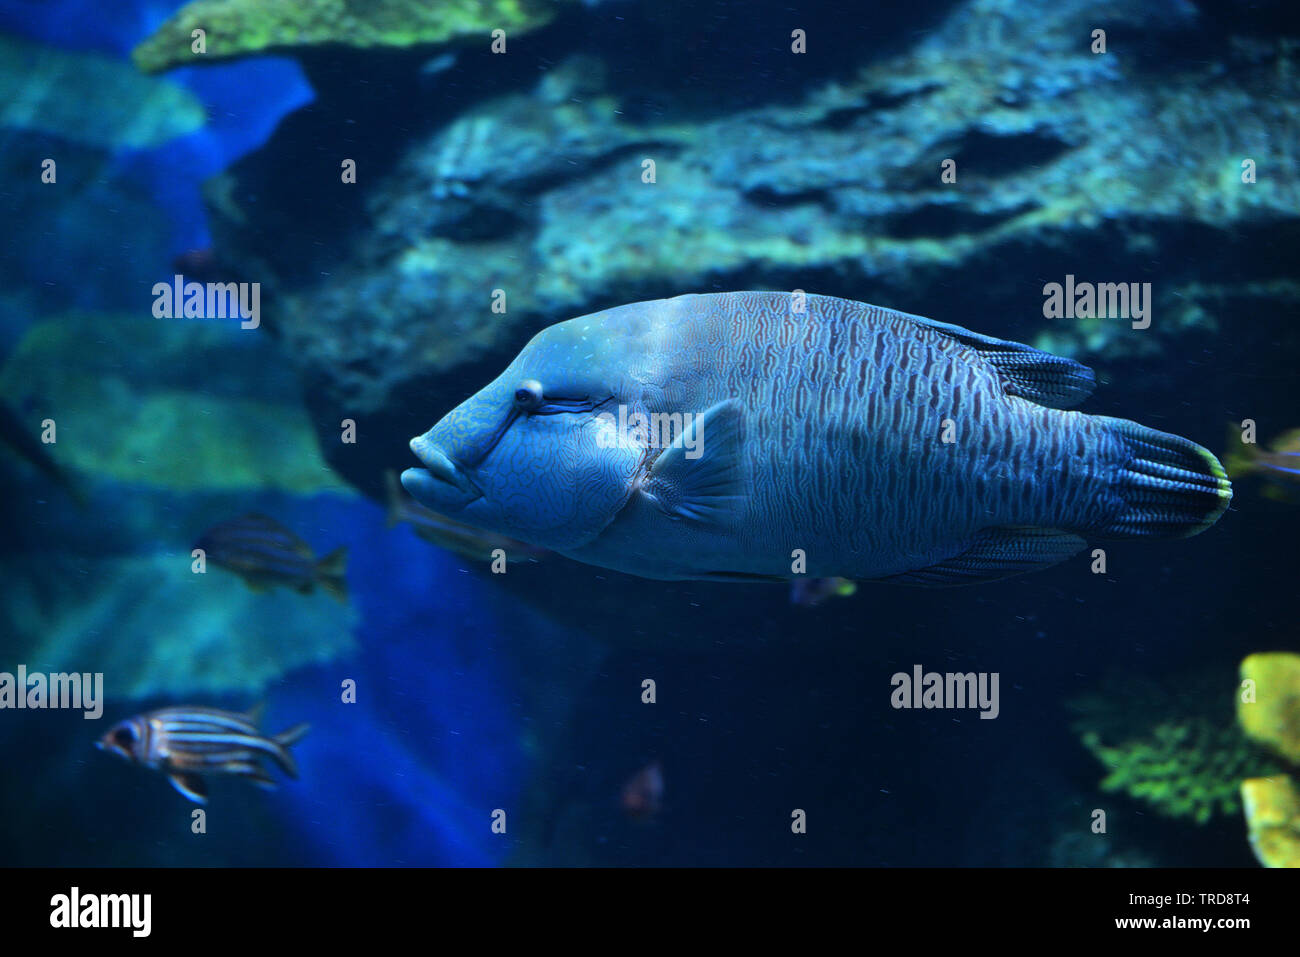 Humphead maori wrasse fish / Napoleon fish swimming marine life underwater ocean - Cheilinus undulatus Stock Photo